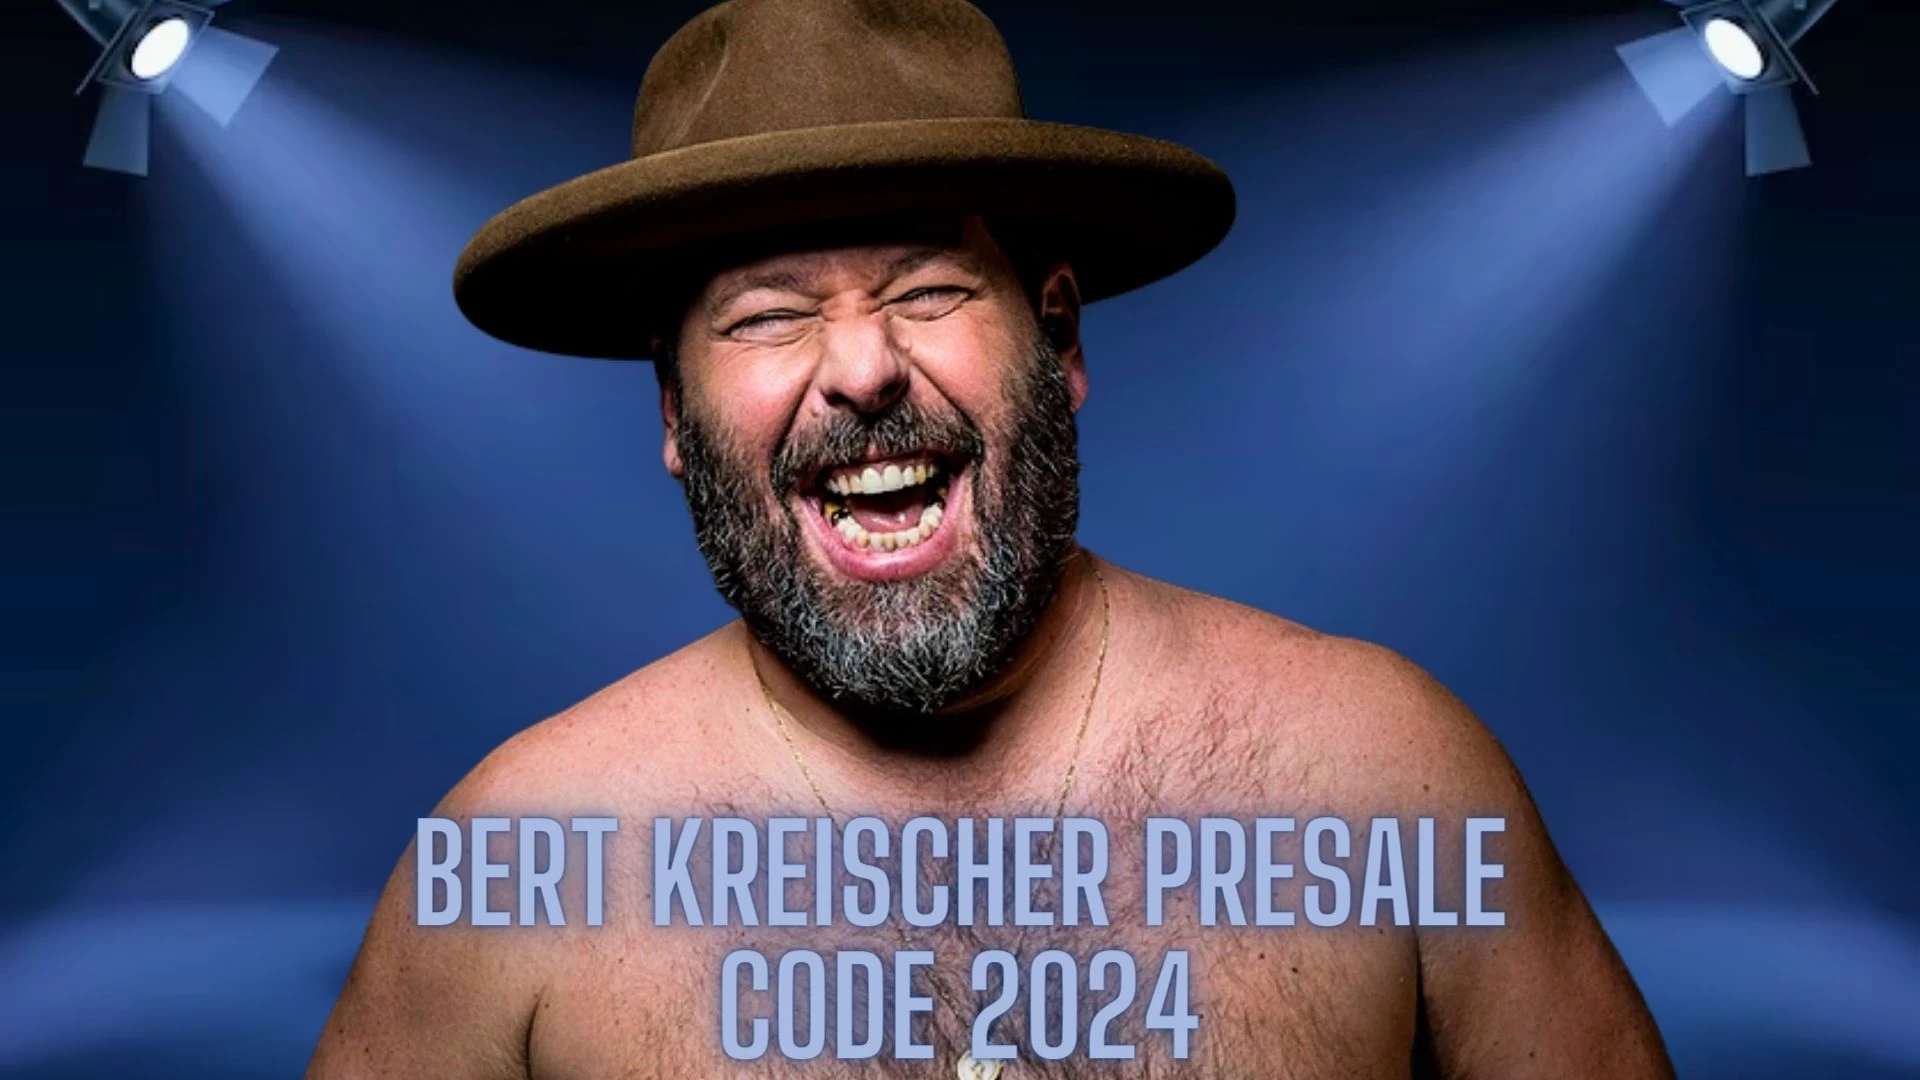 Bert Kreischer Presale Code 2024: How to Get Bert Kreischer Presale Tickets?